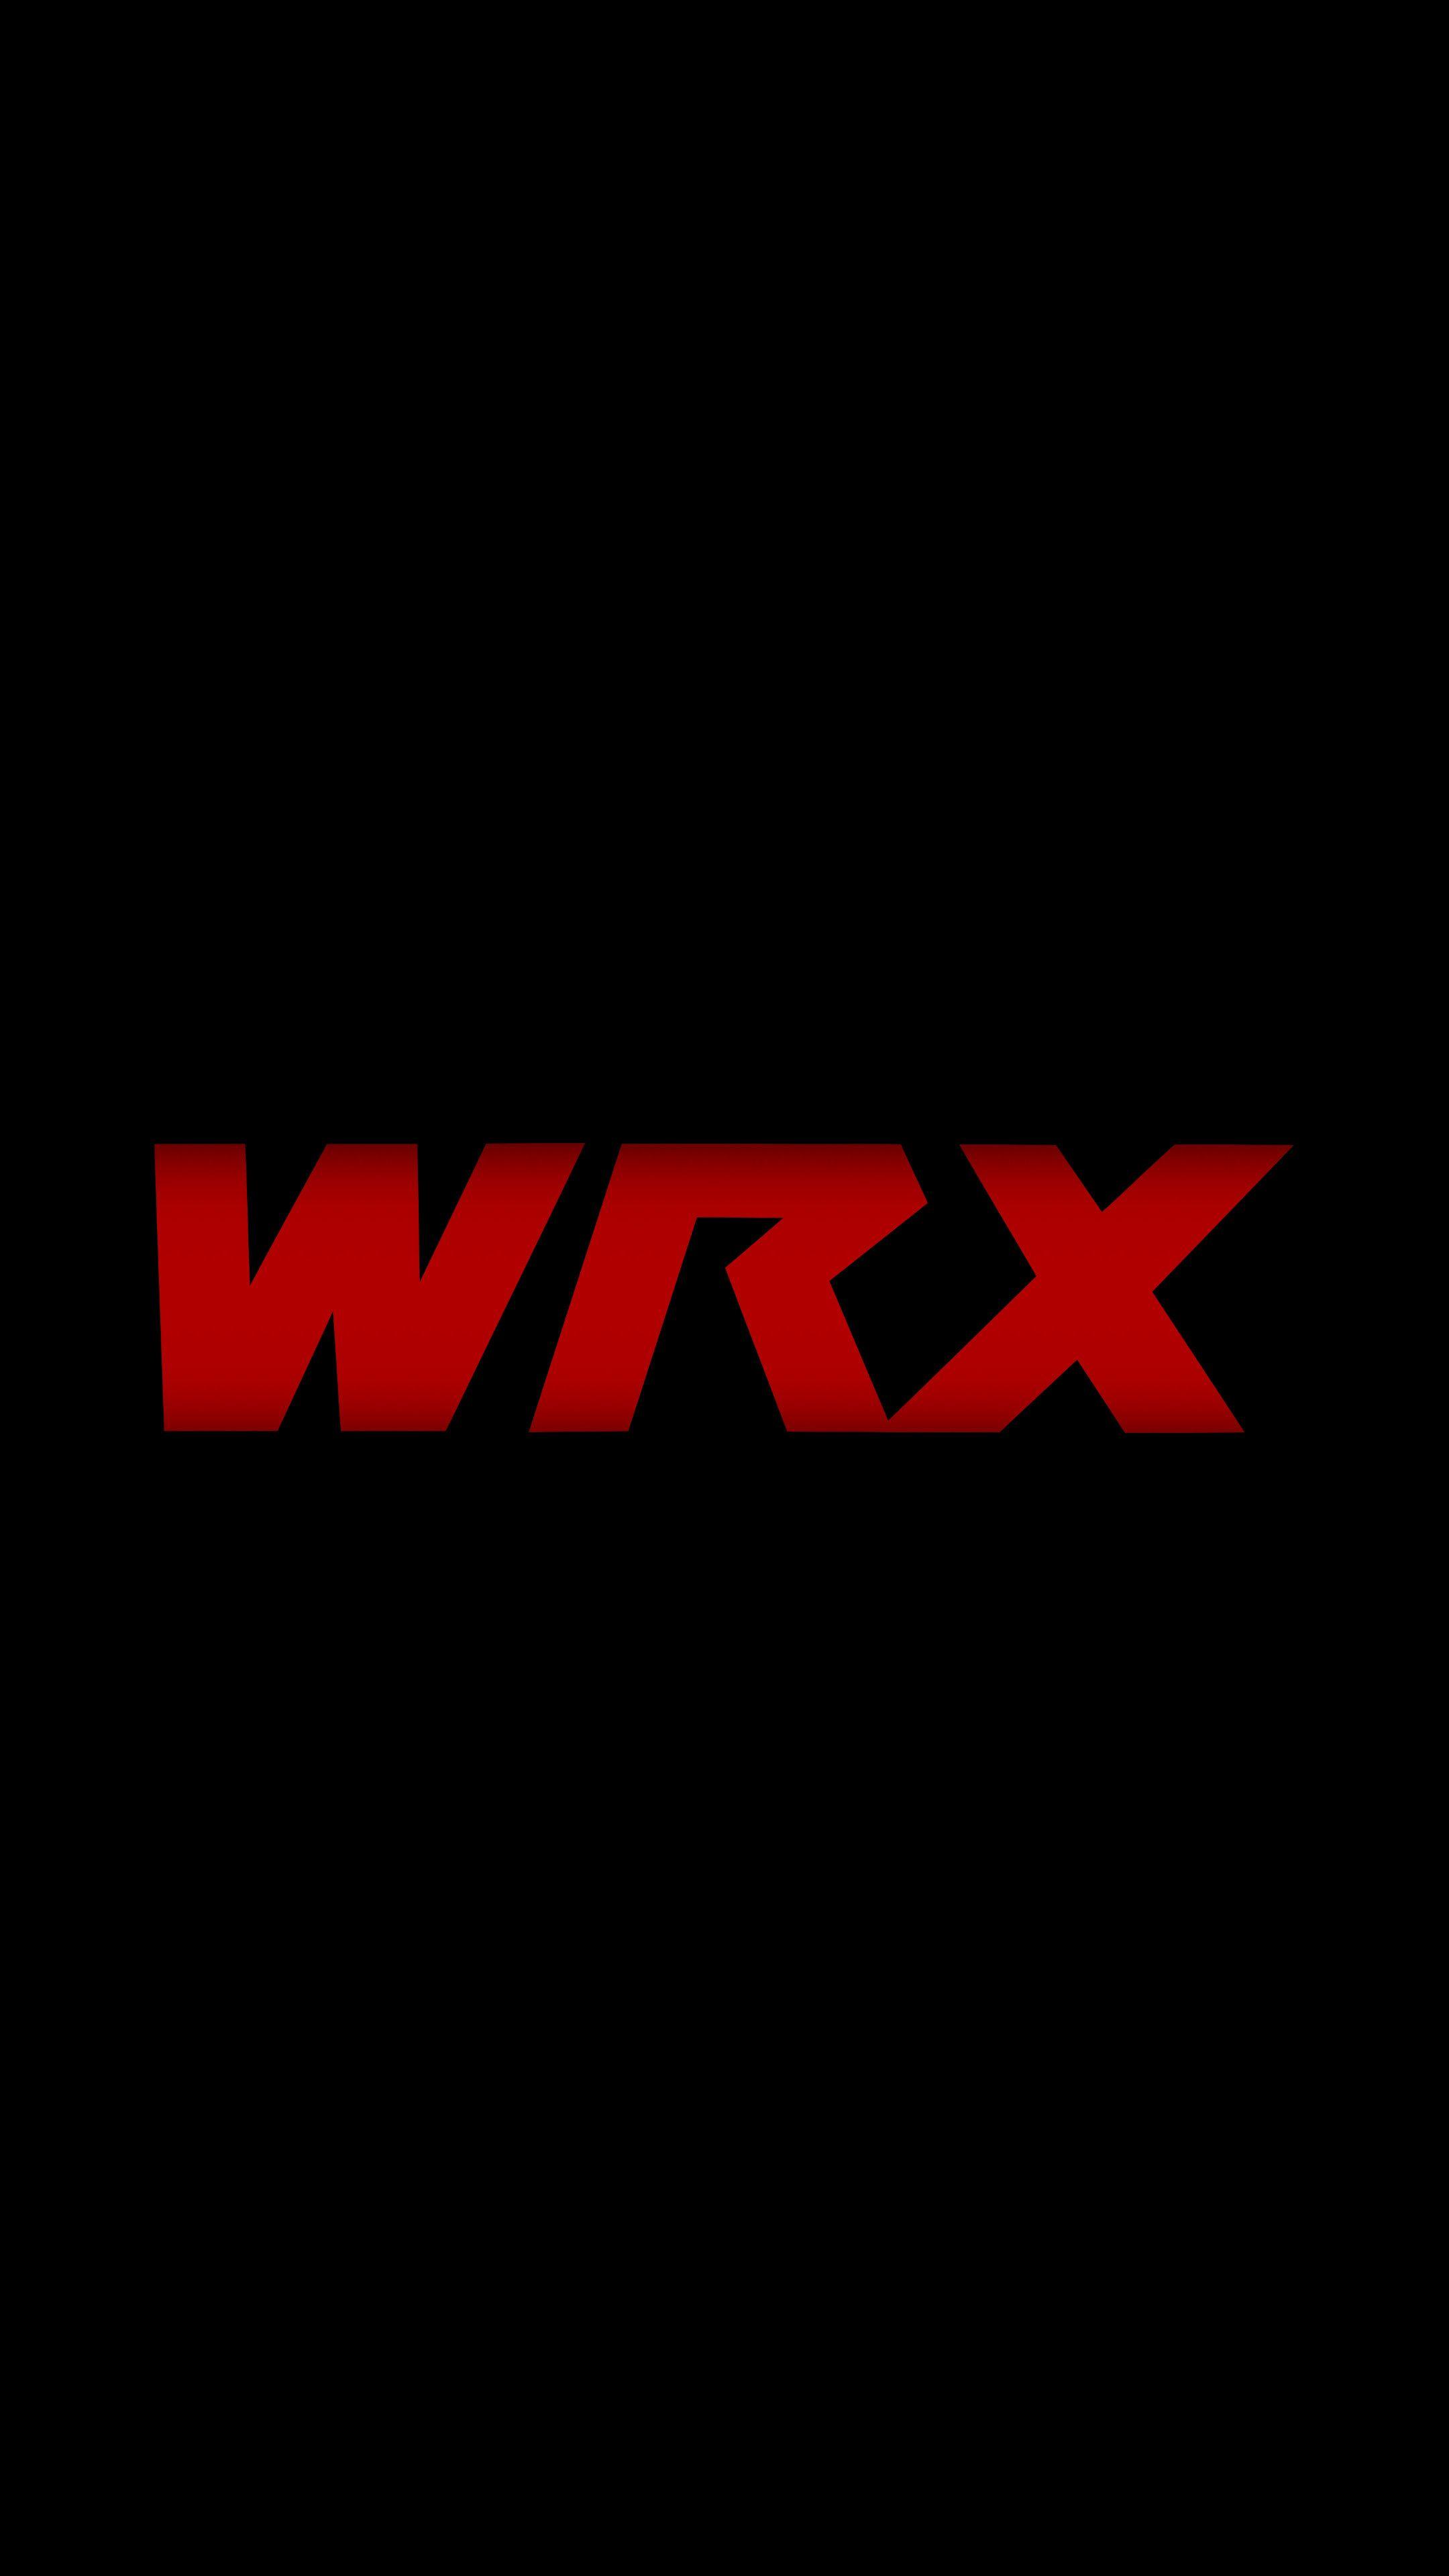 WRX STI Logo - Wrx Logos